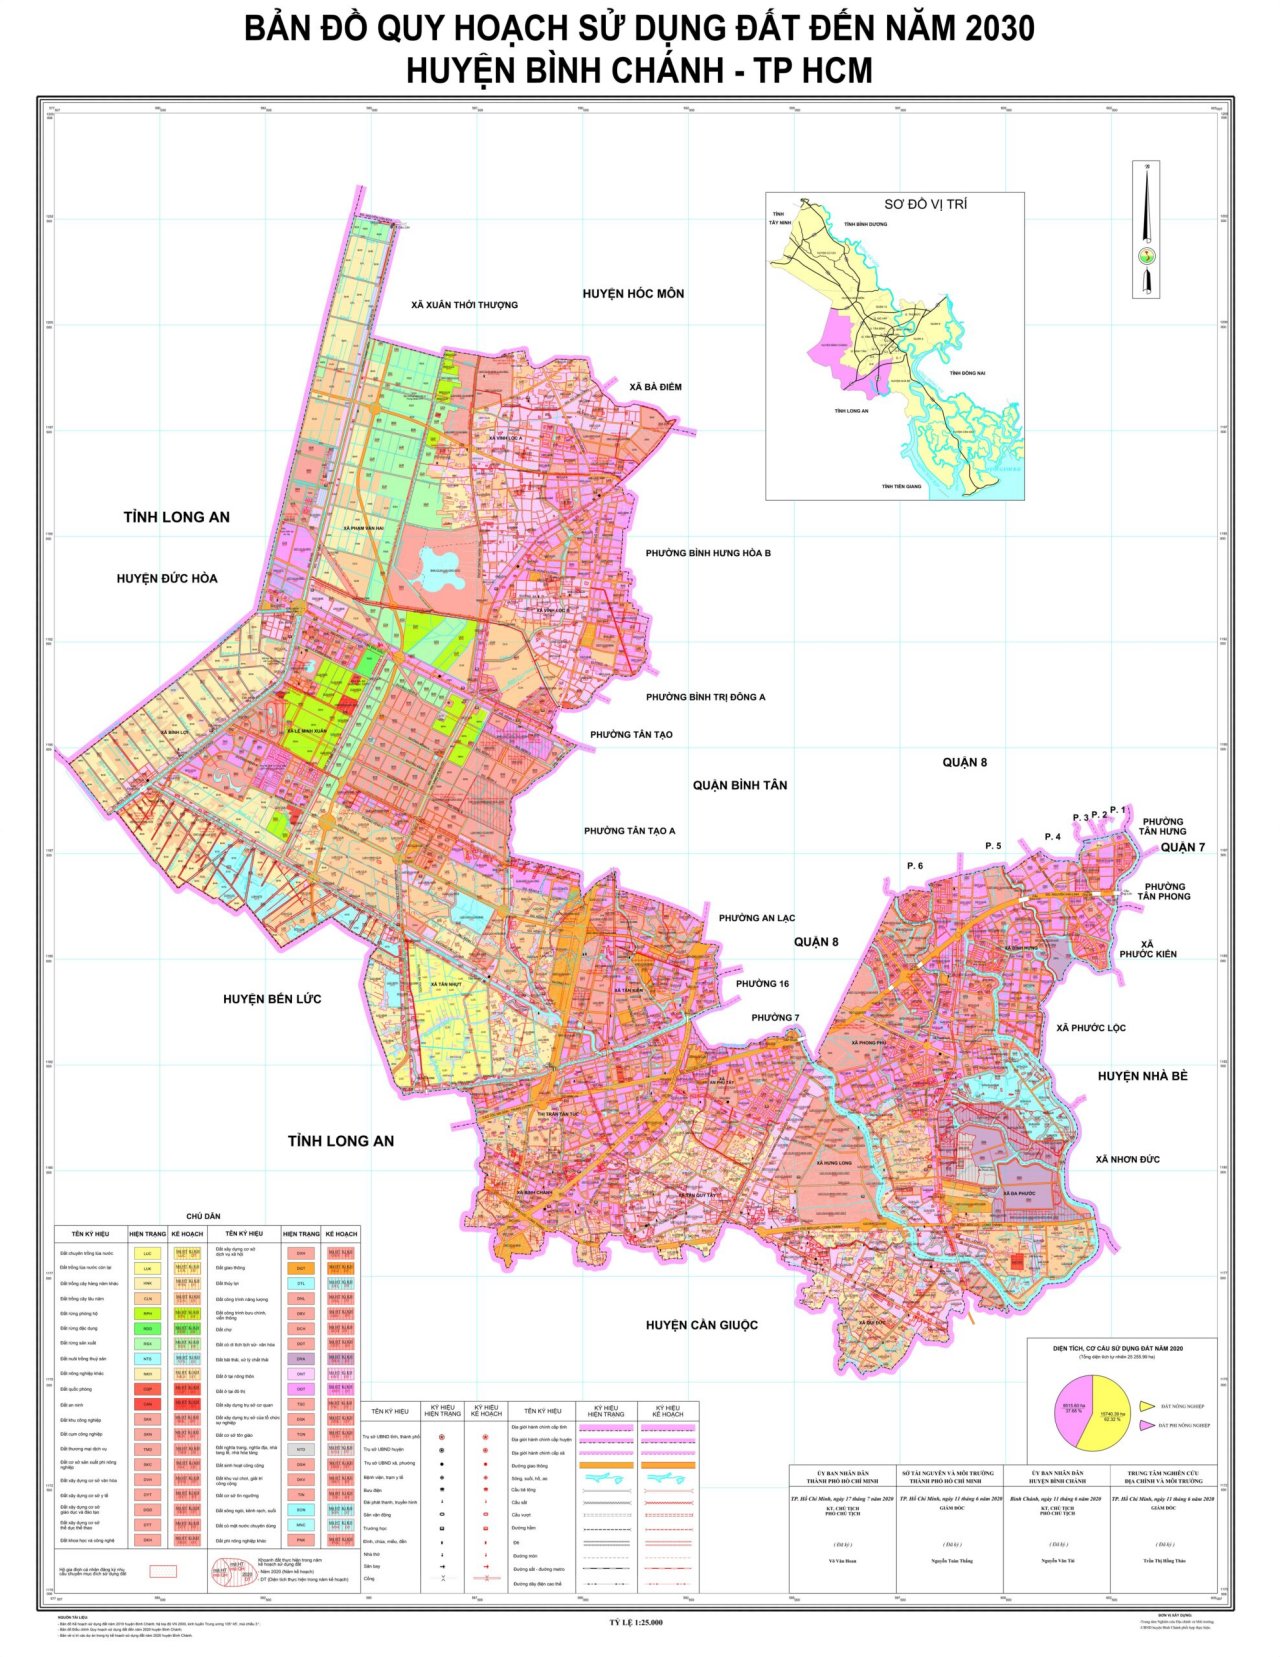 Bản đồ quy hoạch sử dụng đất đến năm 2030 tại Huyện Bình Chánh